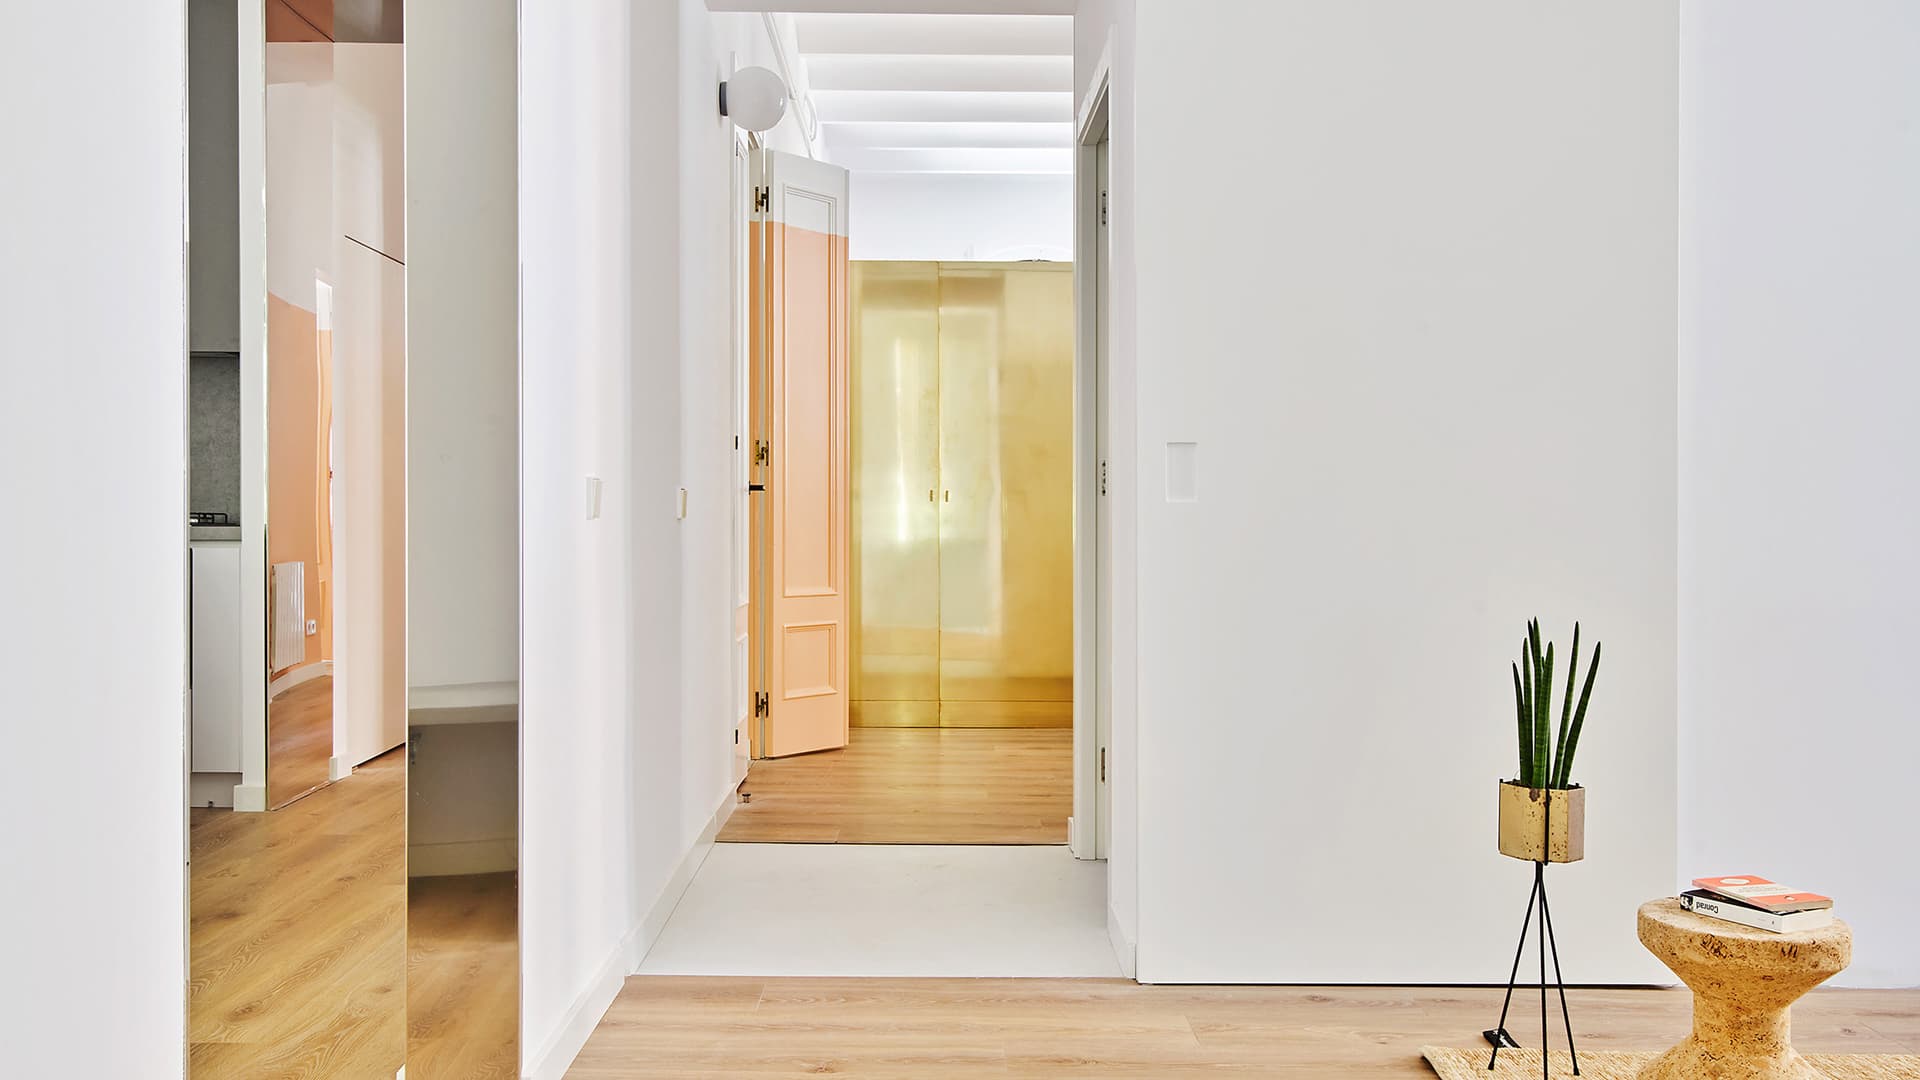 Квартира с потайным проходом в Испании – проект Raul Sanchez Architects